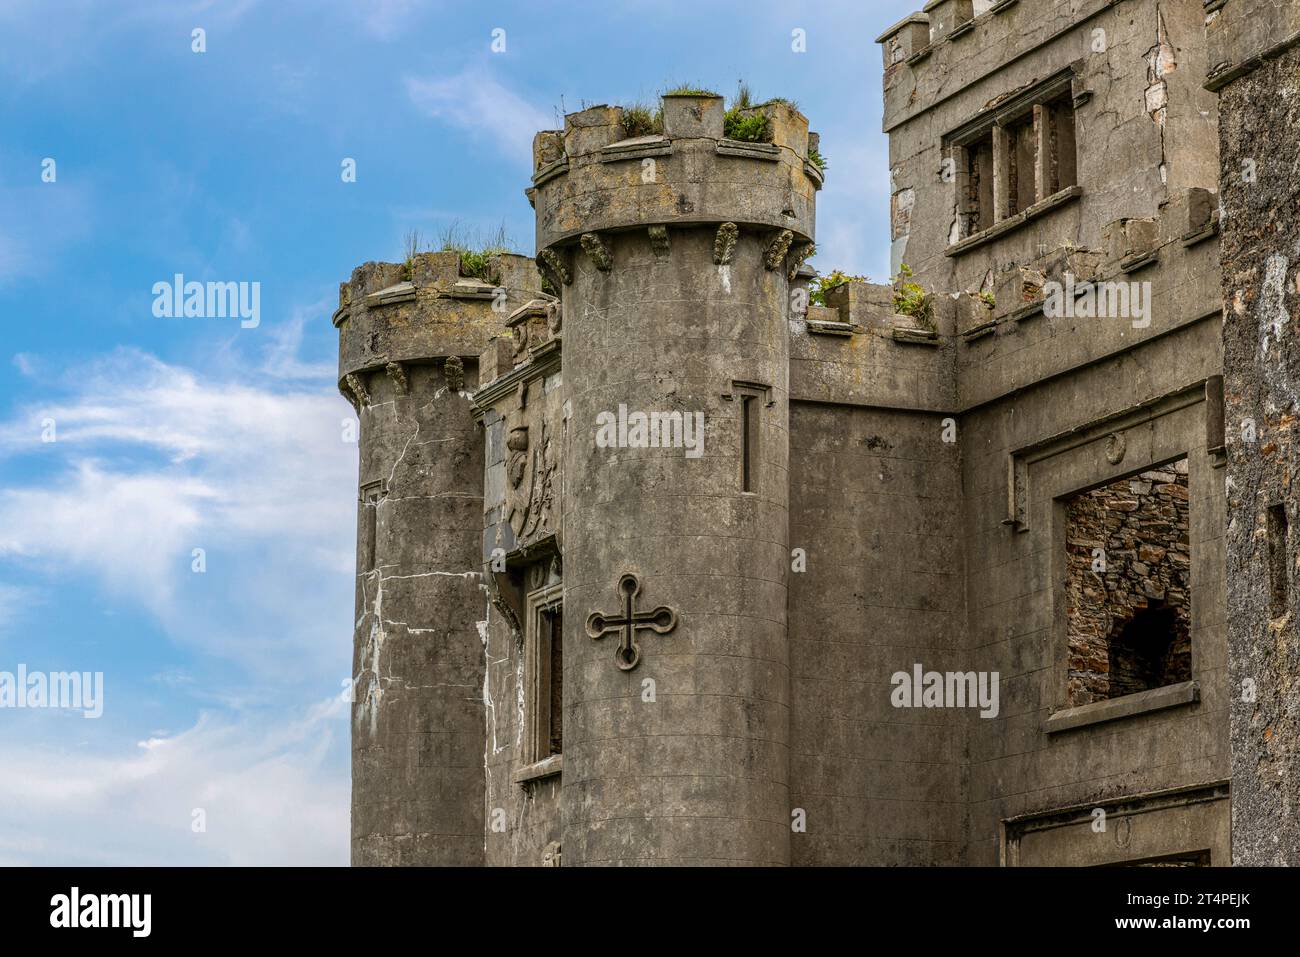 El castillo de Clifden es un castillo del siglo XIX en ruinas en Connemara, Irlanda. Foto de stock